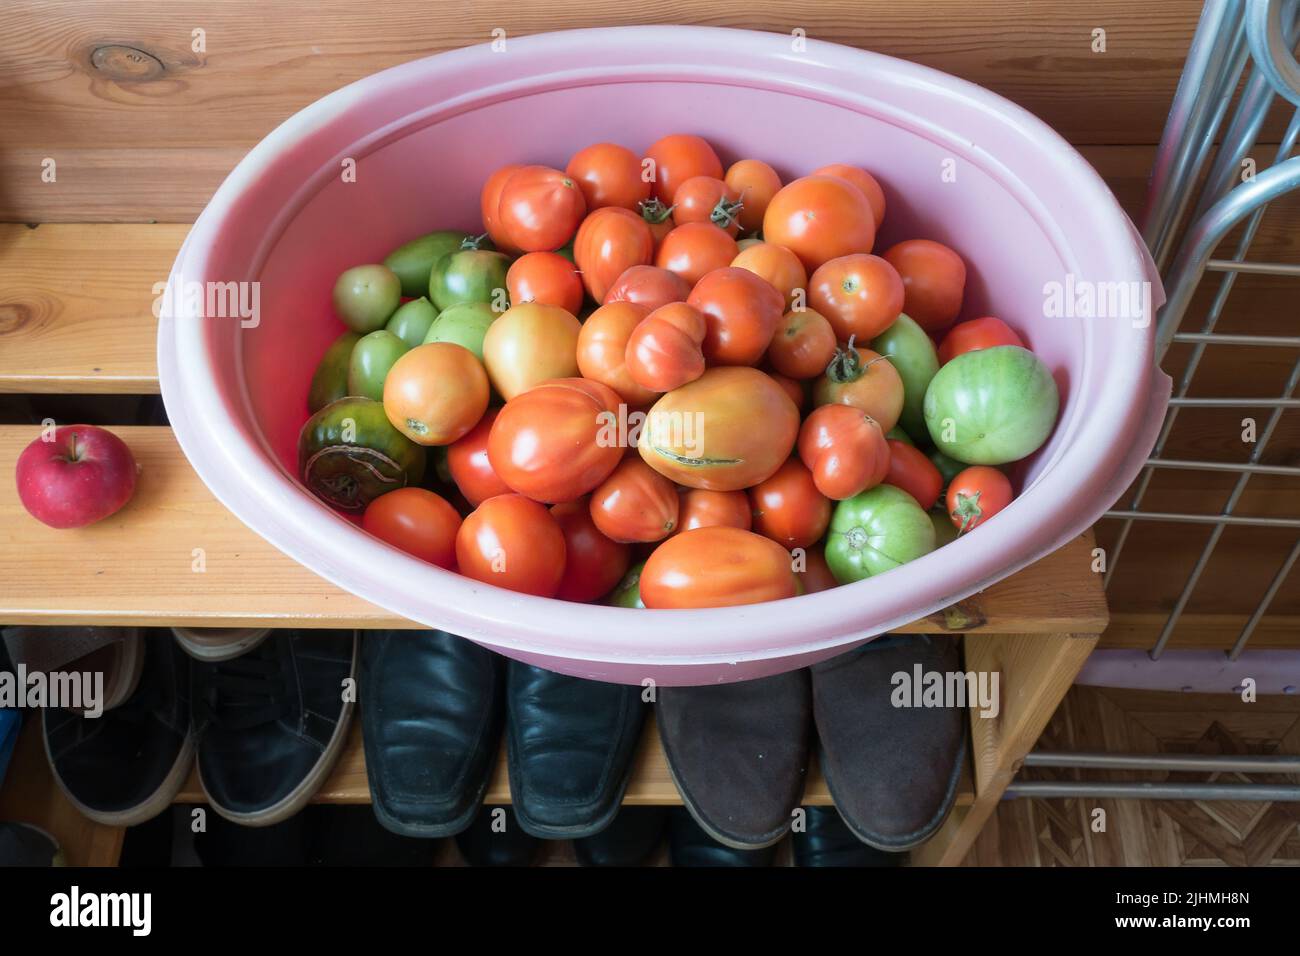 tomates verdes y rojos cosechados para almacenamiento Foto de stock